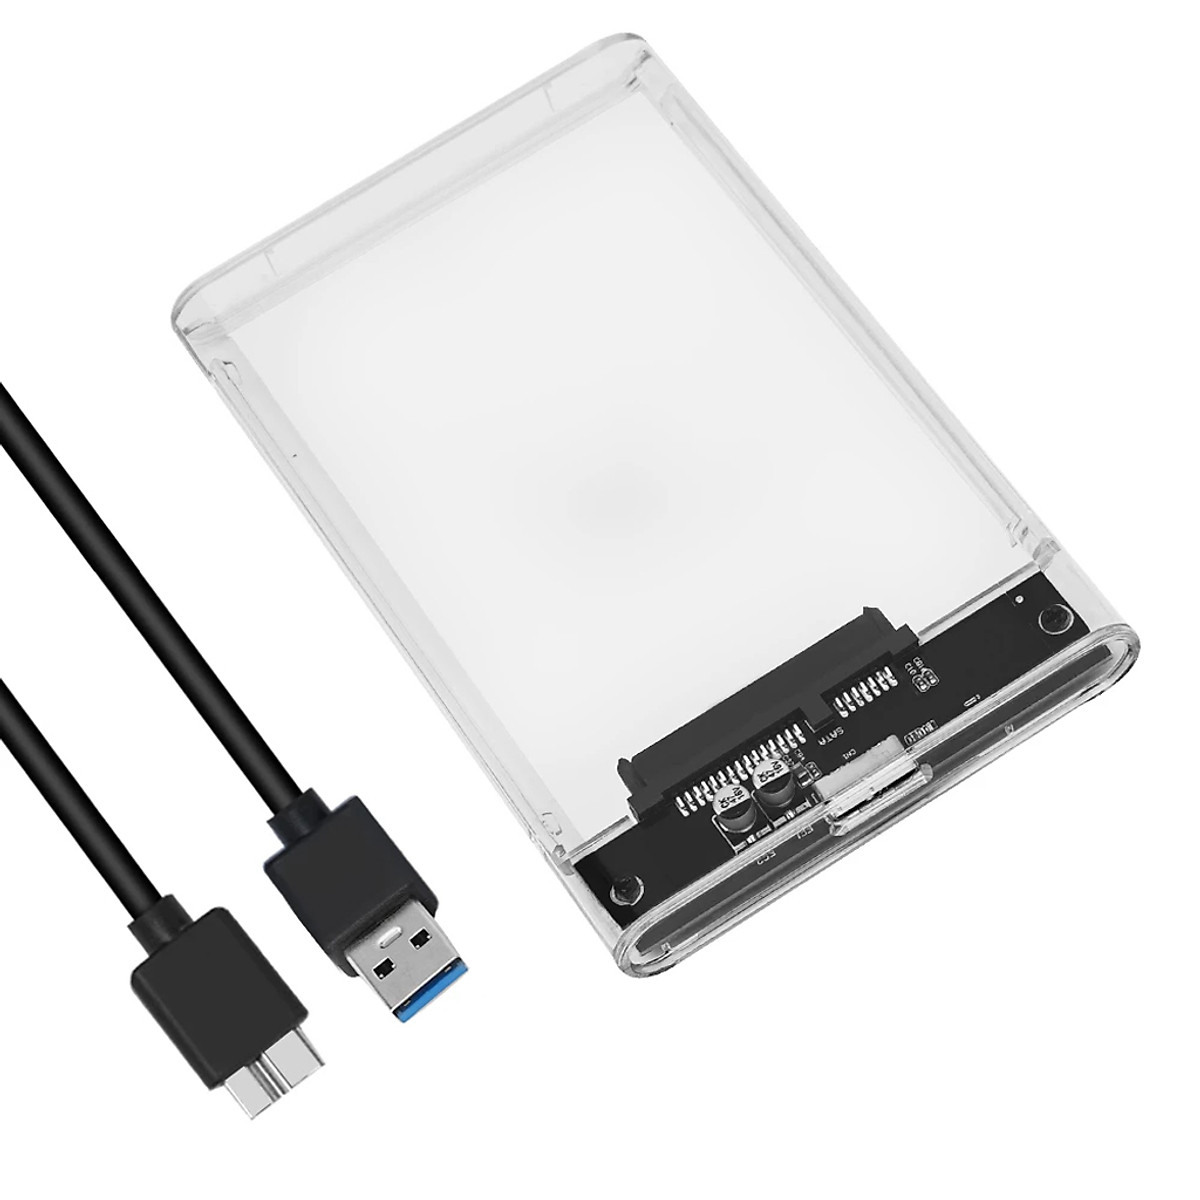 Box Ổ Cứng  2.5 Inch Hộp Đựng Ổ Cứng Di Động HDD VINETTEAM USB 3.0 Nhựa Trong Suốt Tốc Độ 5gbs - Hàng Chính Hãng